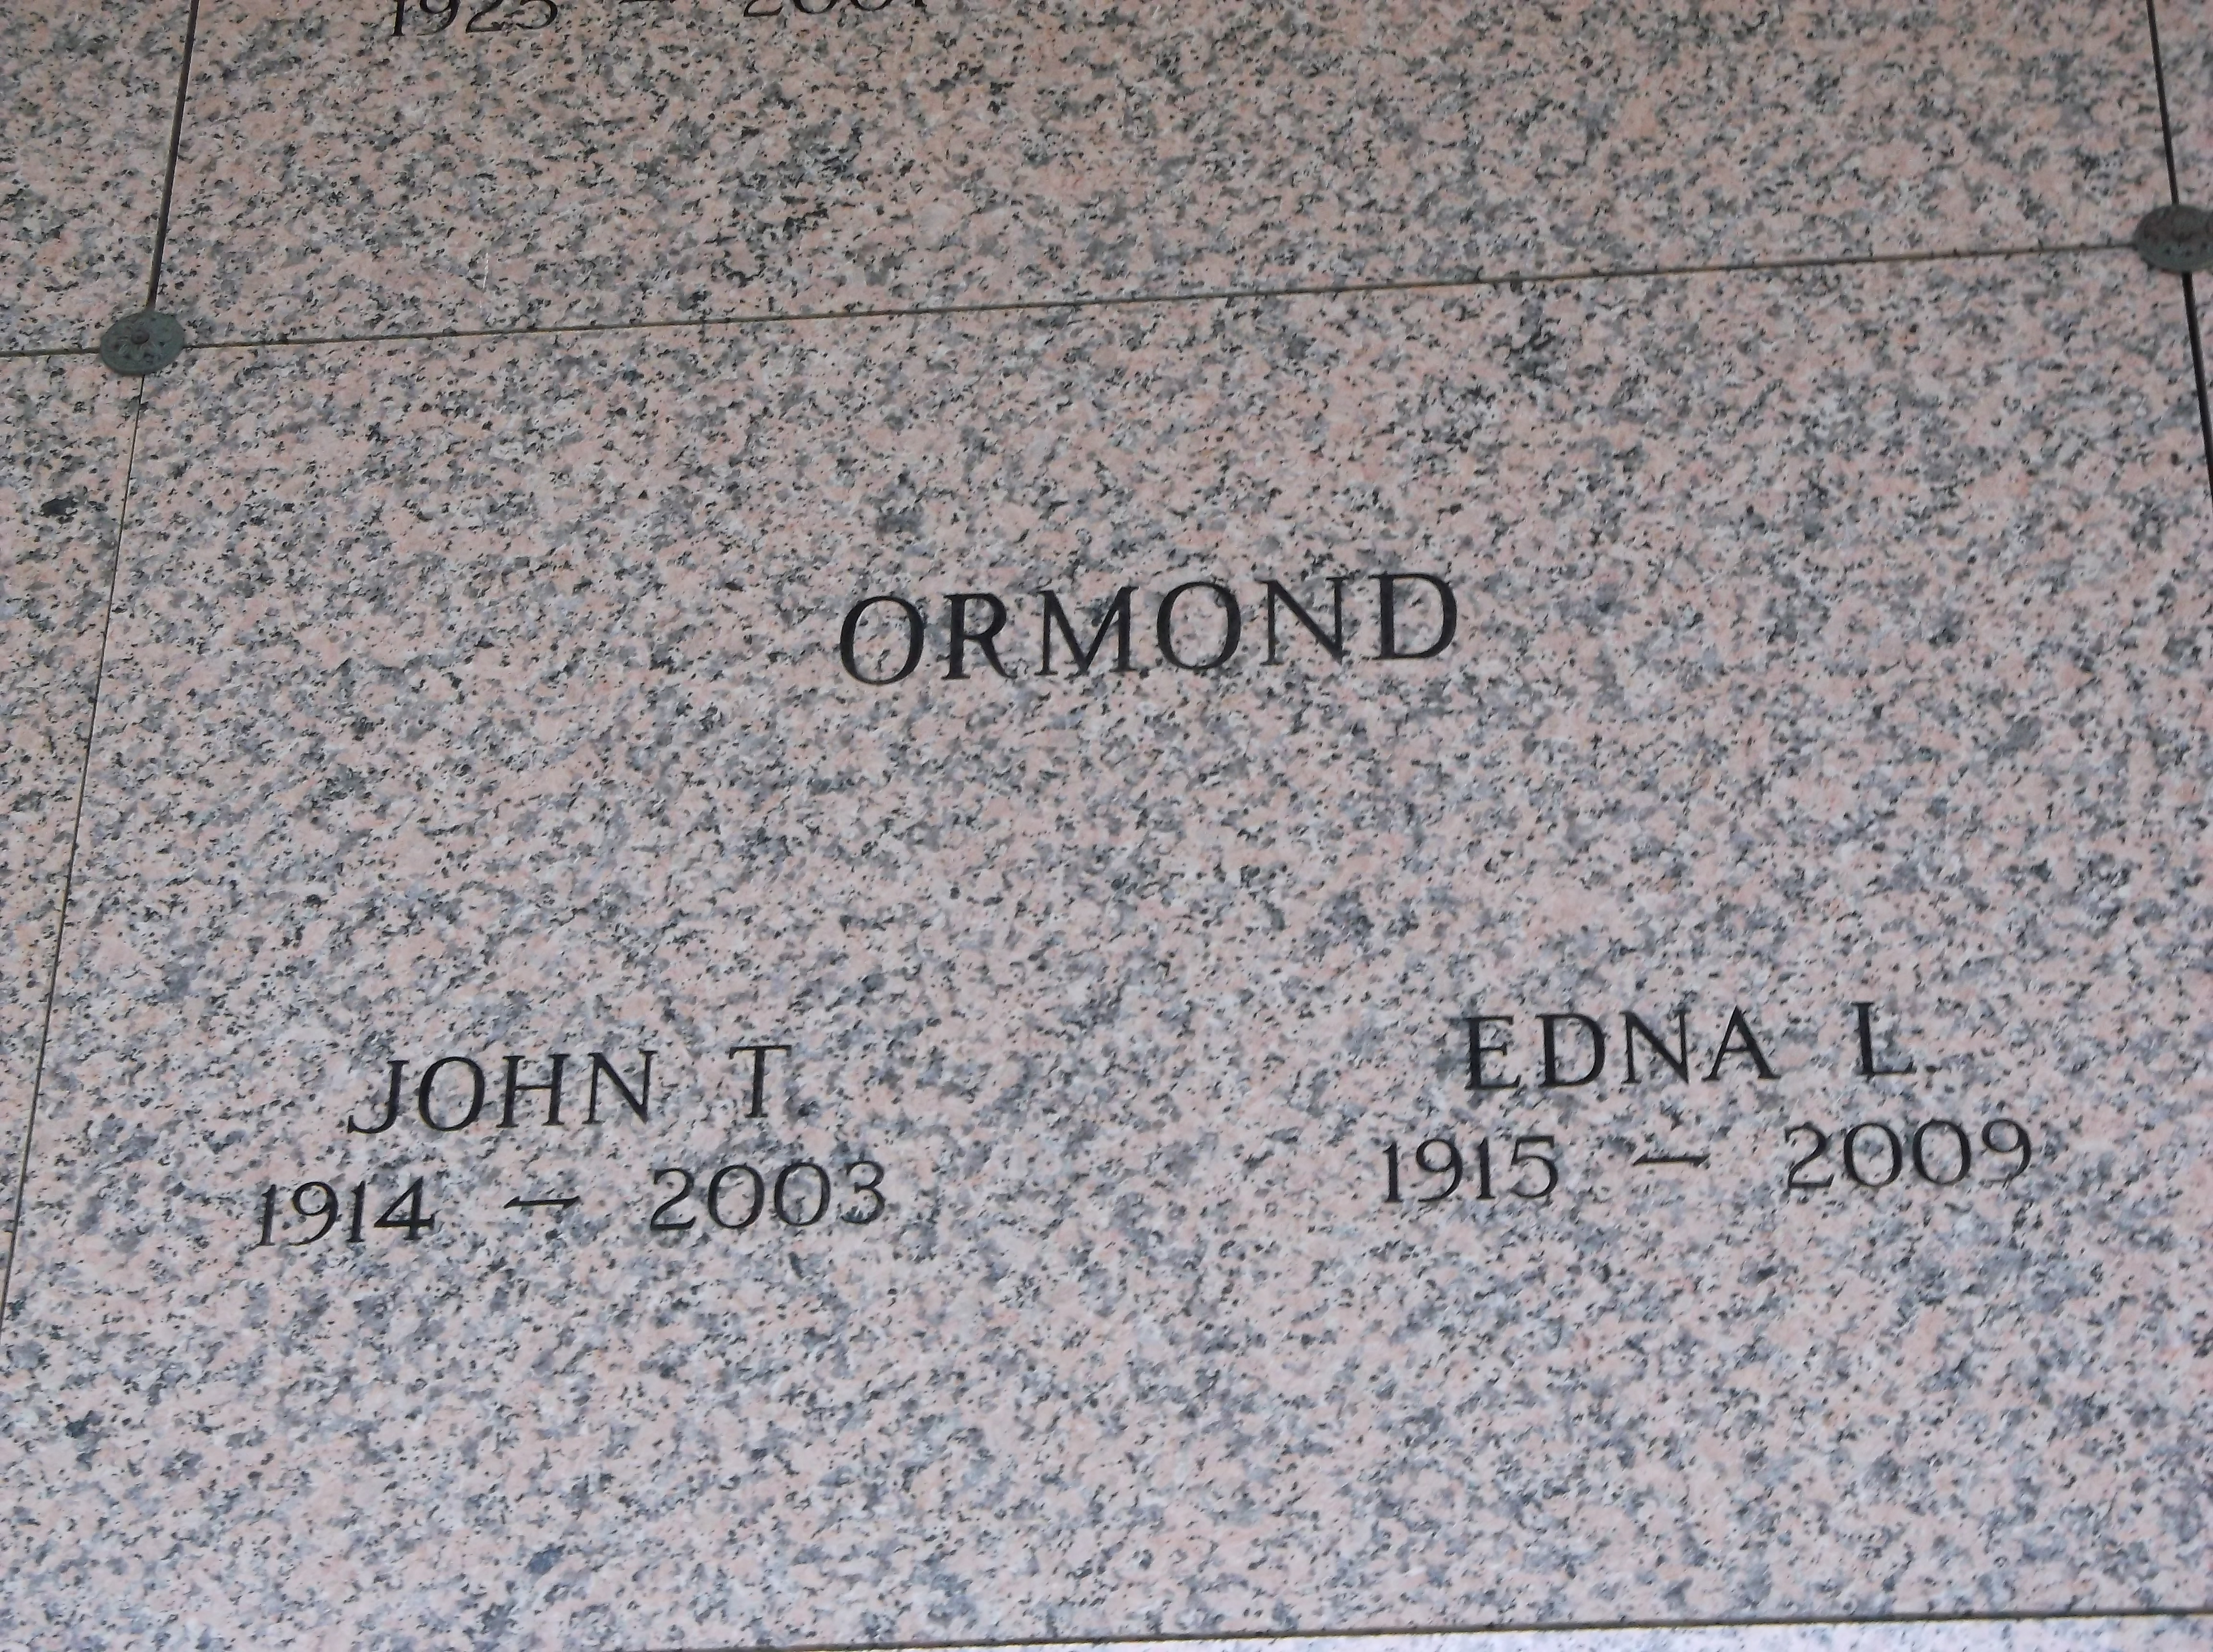 John T Ormond